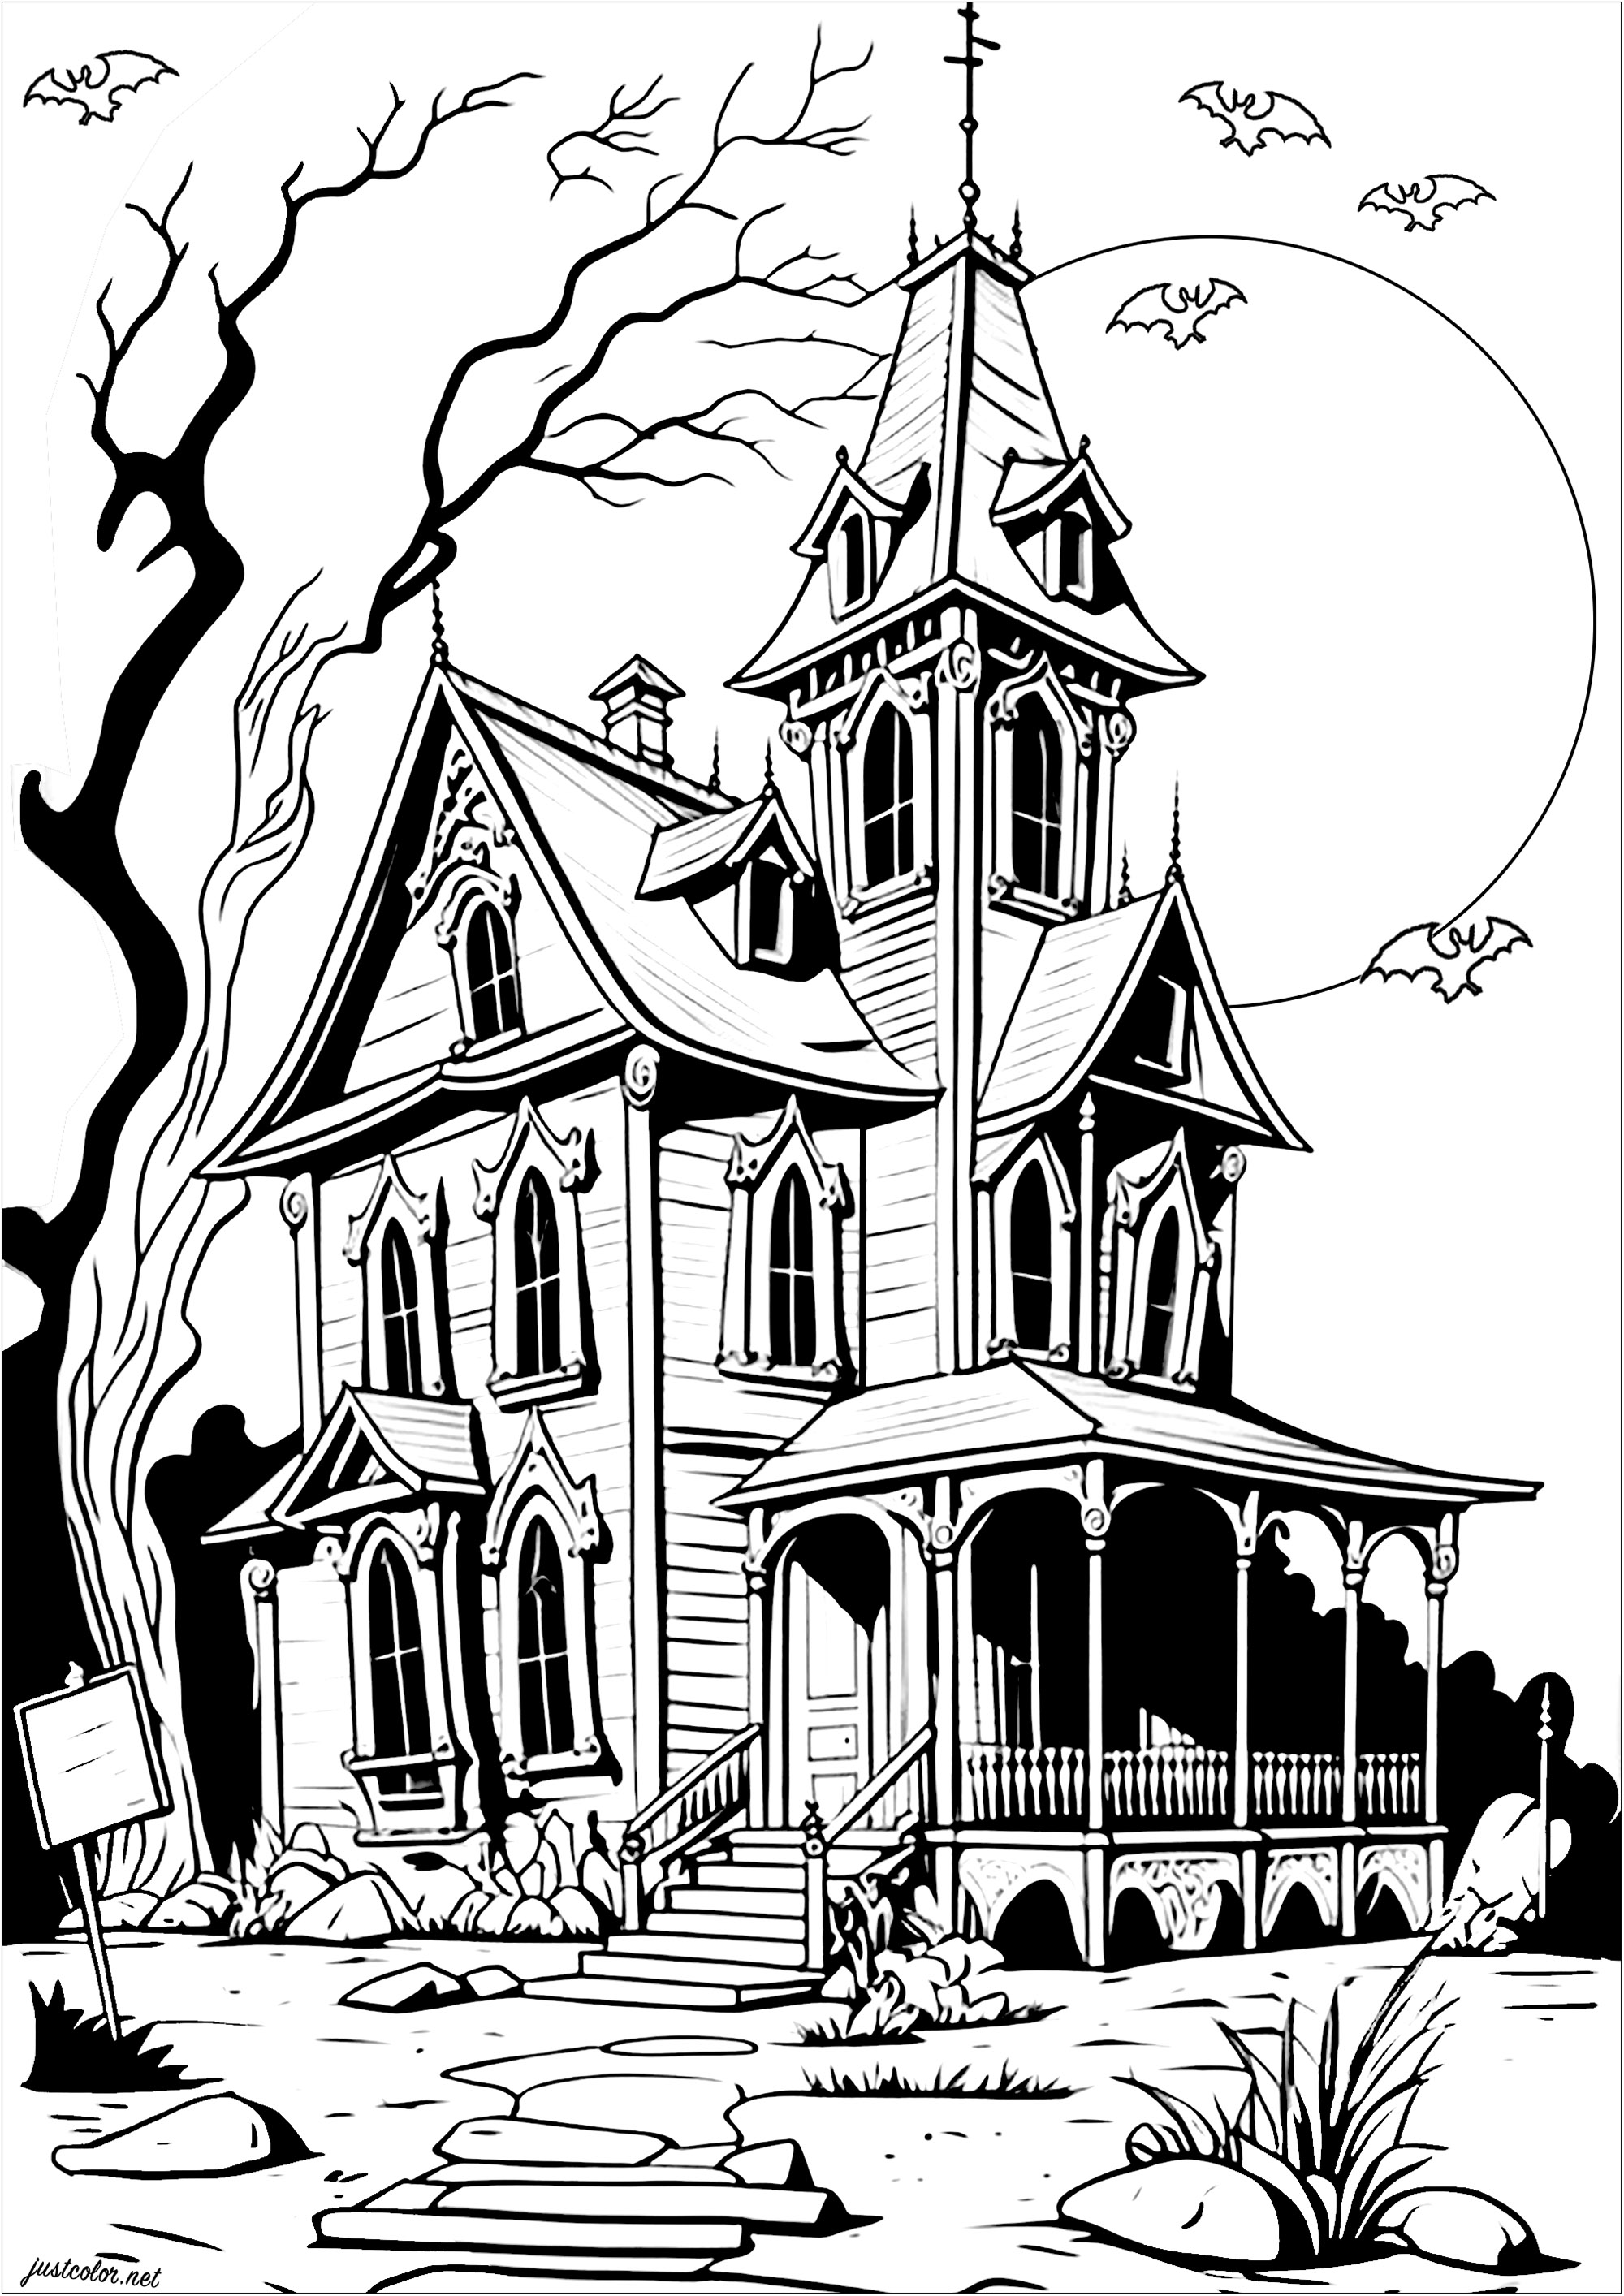 Farbgebung eines sehr düster aussehenden Hauses. Wirst du es wagen, dieses Haus zu betreten, das scheinbar von Geistern bewohnt wird? Die Fledermäuse beschützen es...